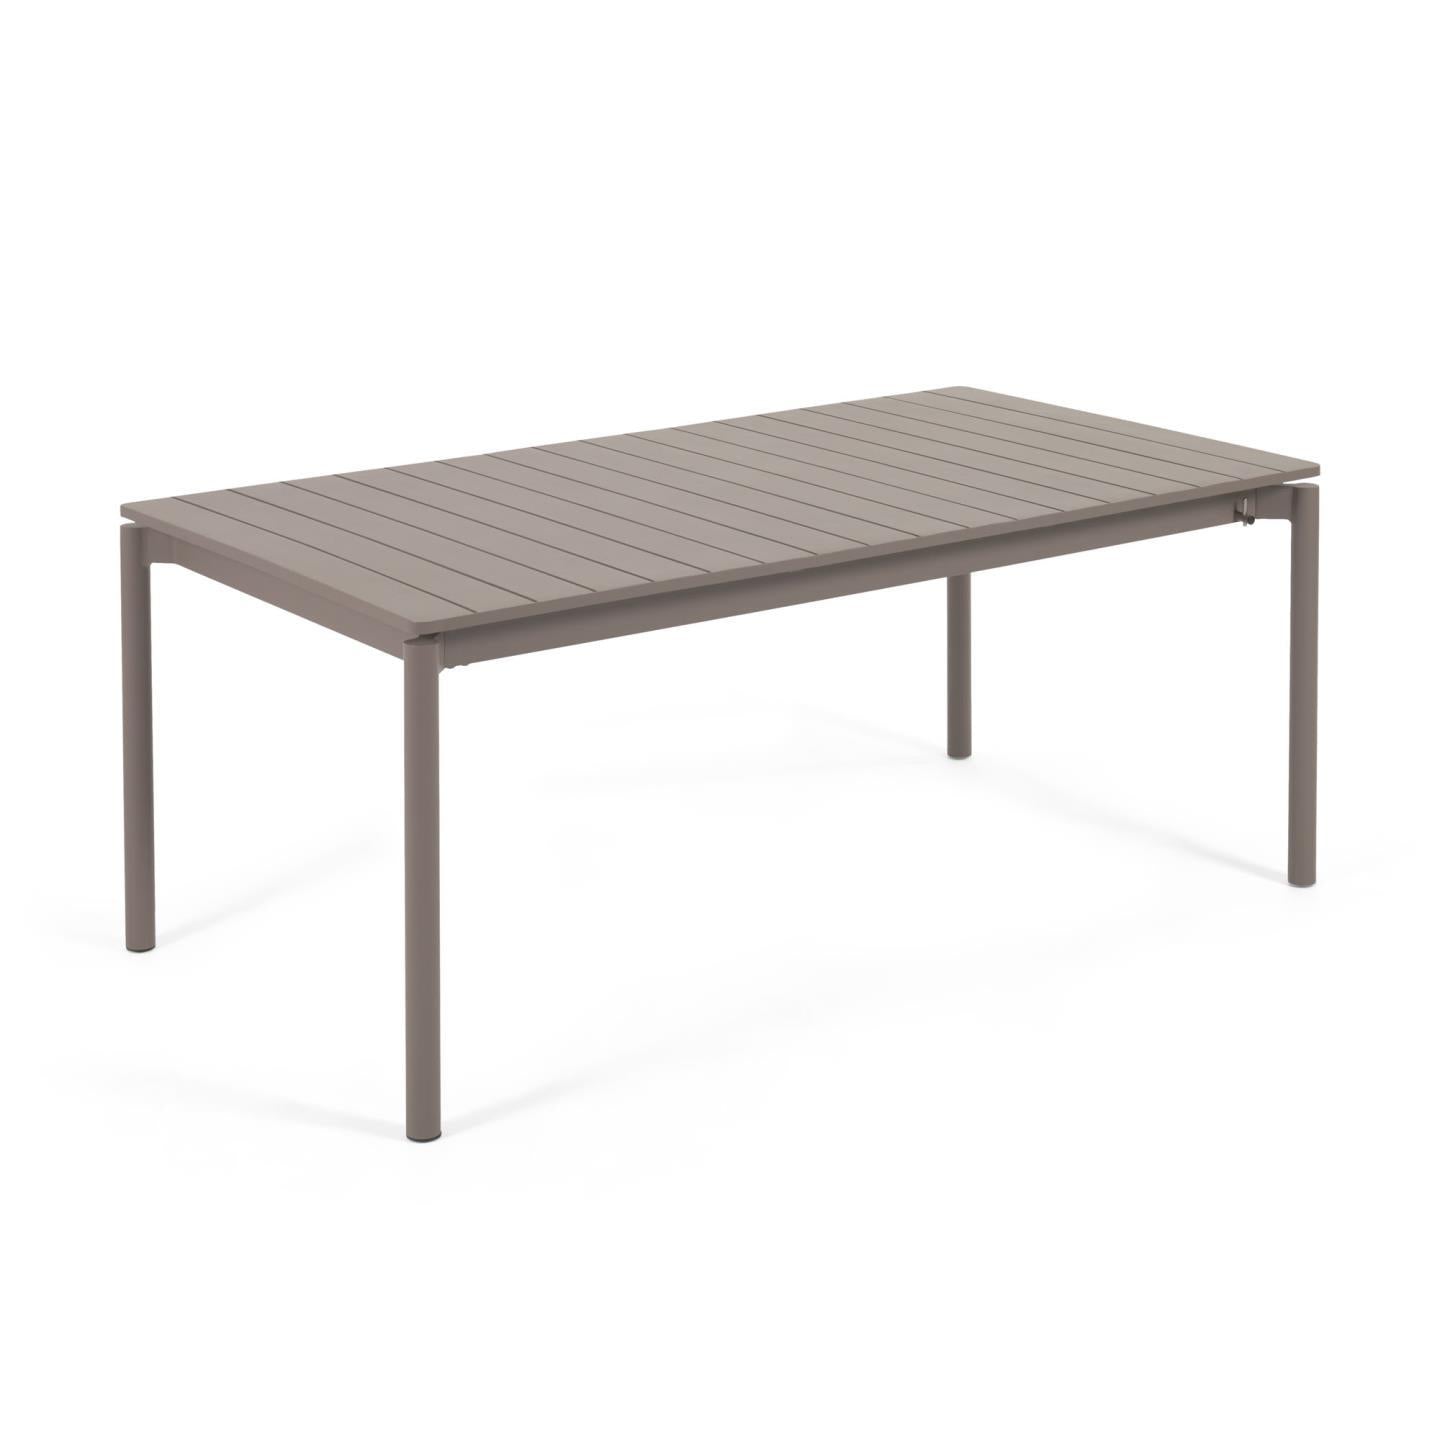 Zaltana kihúzható alumínium kültéri asztal, matt barna színű 180 (240) x 100 cm